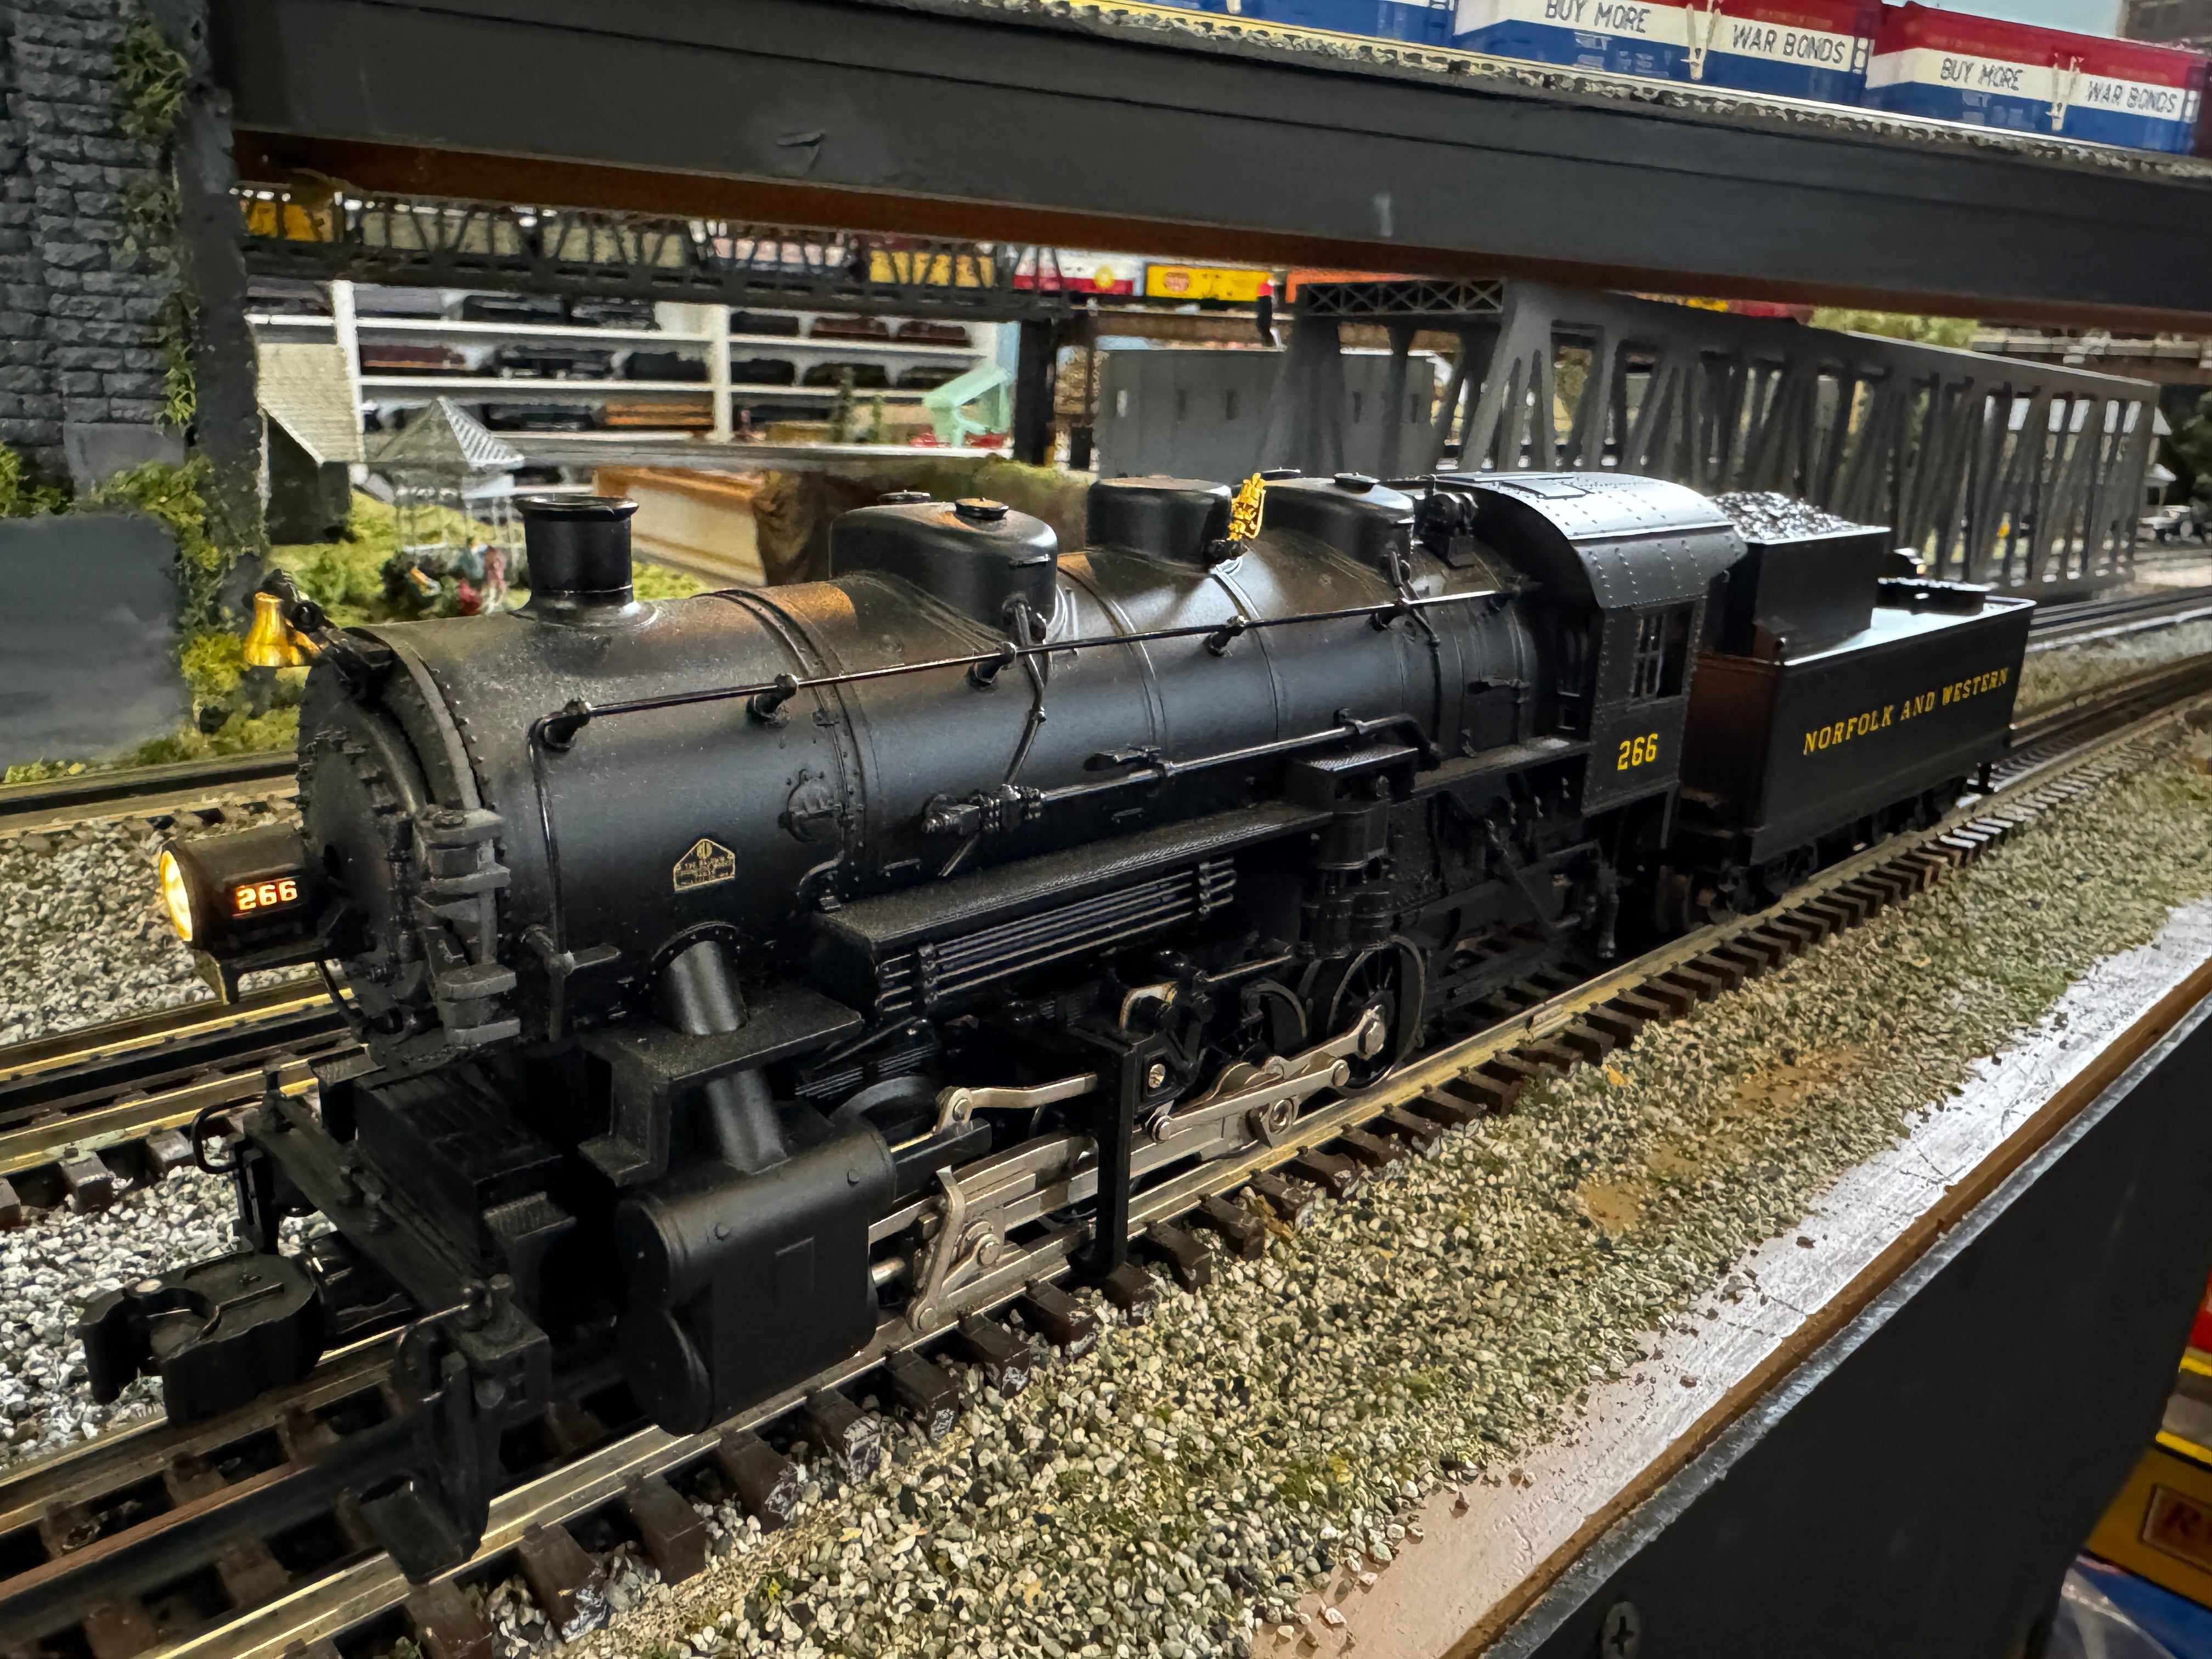 Lionel 6-38047 Norfolk & Western USRA 0-8-0 Switcher Locomotive & Tender-Second hand-M3753